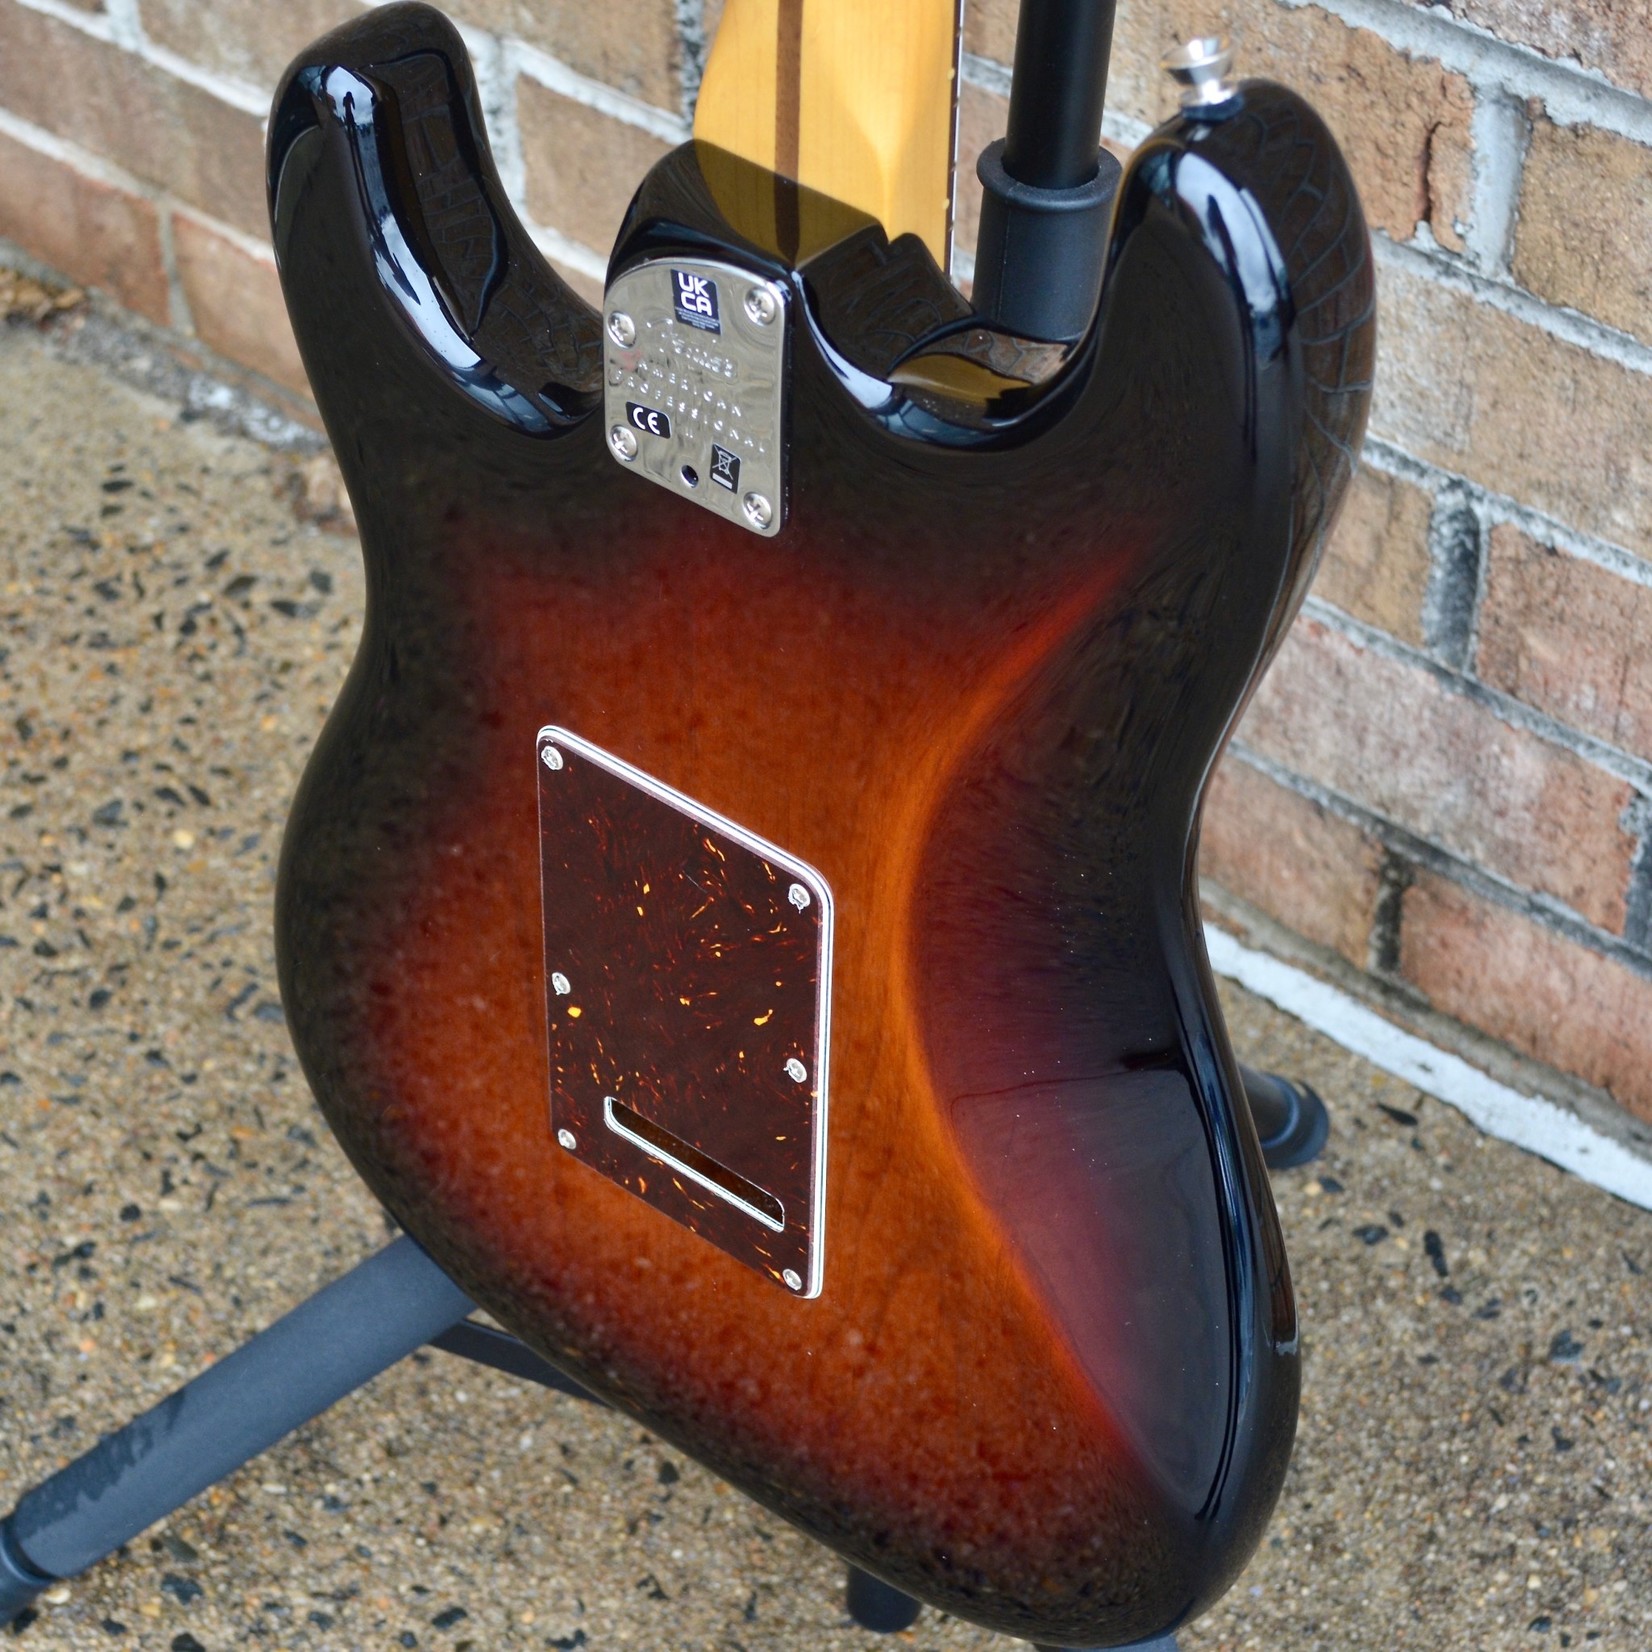 Fender Fender American Professional II Stratocaster®, Rosewood Fingerboard, 3-Color Sunburst